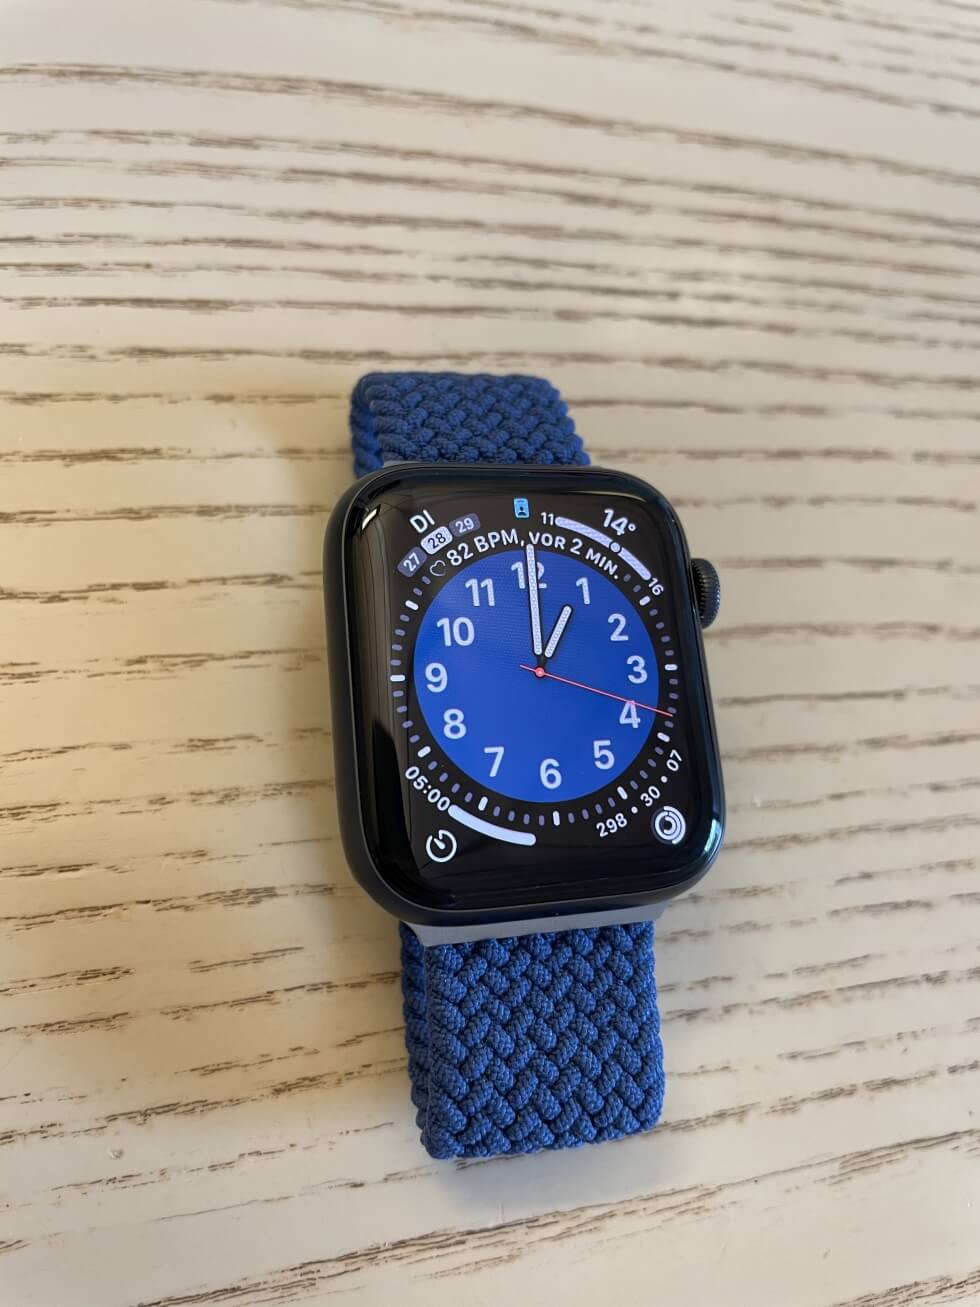 Berke Aras hat sich die neue Apple Watch gegönnt